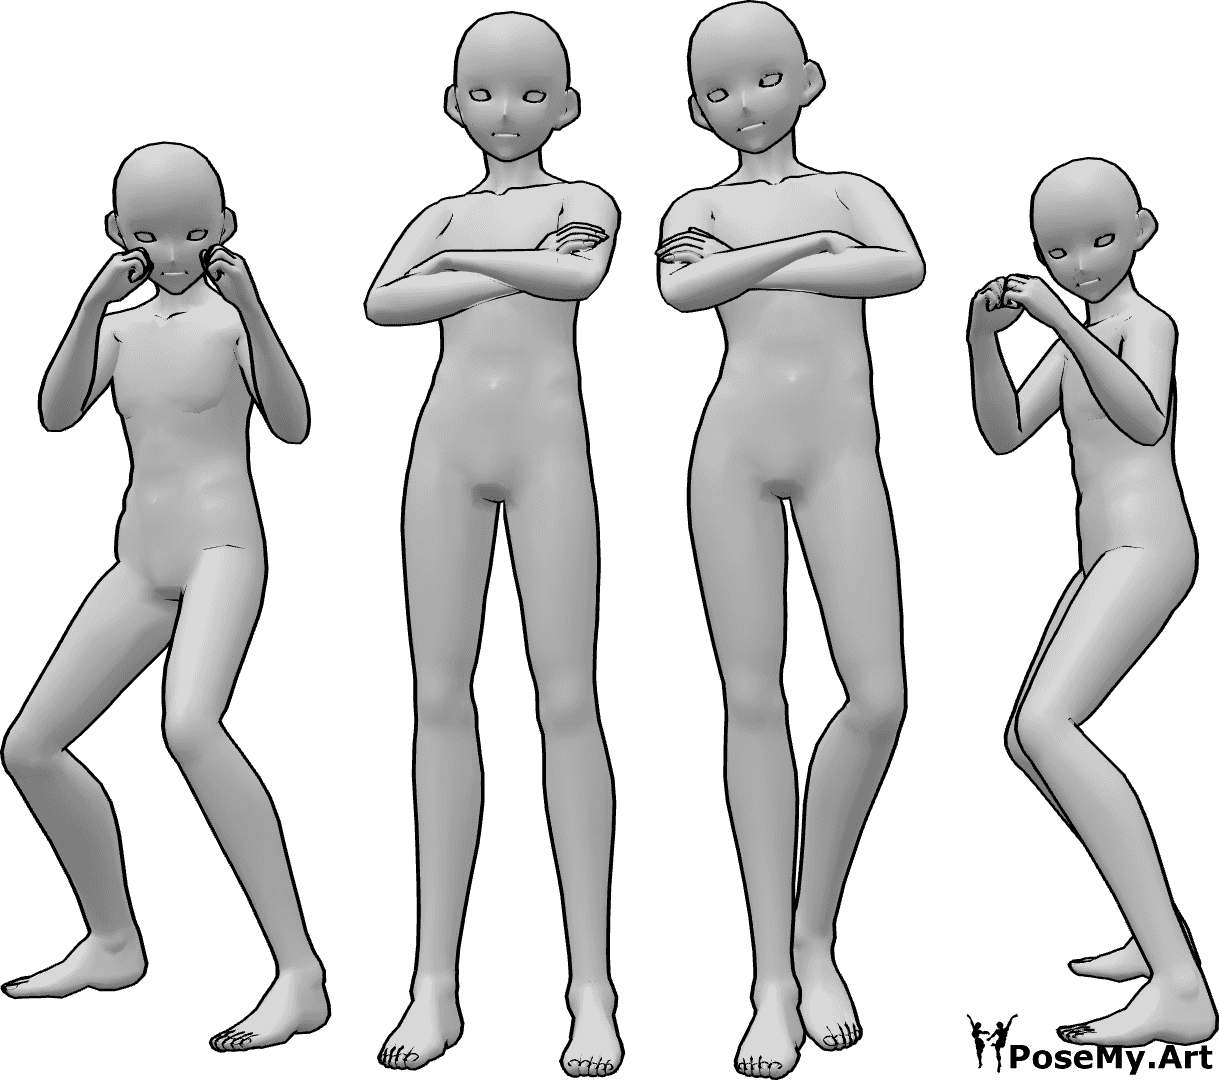 Posen-Referenz- Anime männliche Kämpfer posieren - Vier männliche Anime-Kämpfer posieren, zwei von ihnen in Boxhaltung und die anderen beiden stehen mit verschränkten Armen